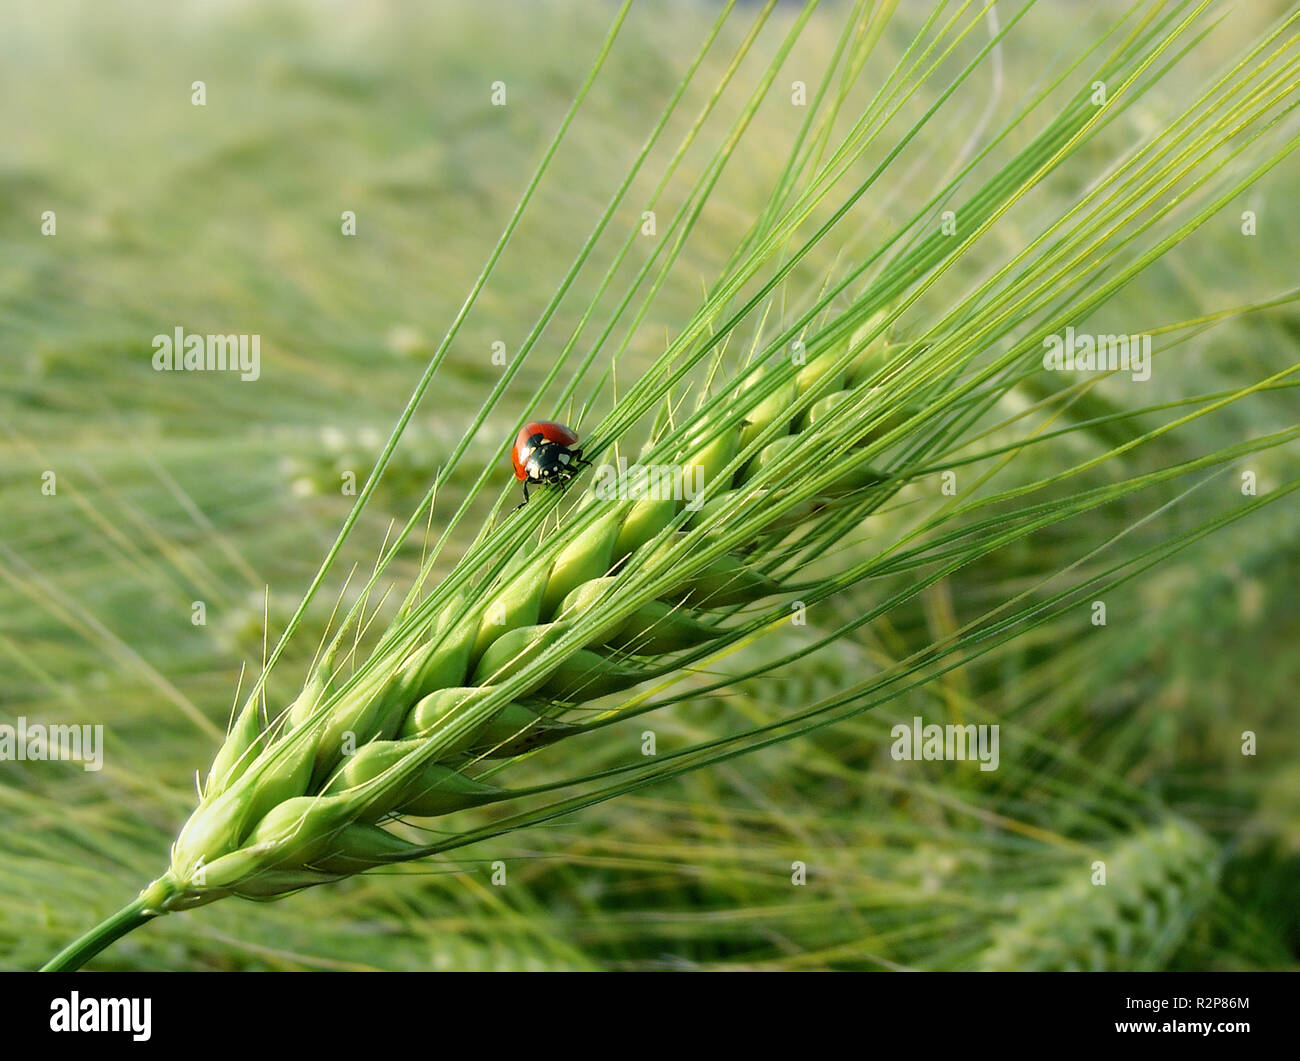 barley with ladybug Stock Photo